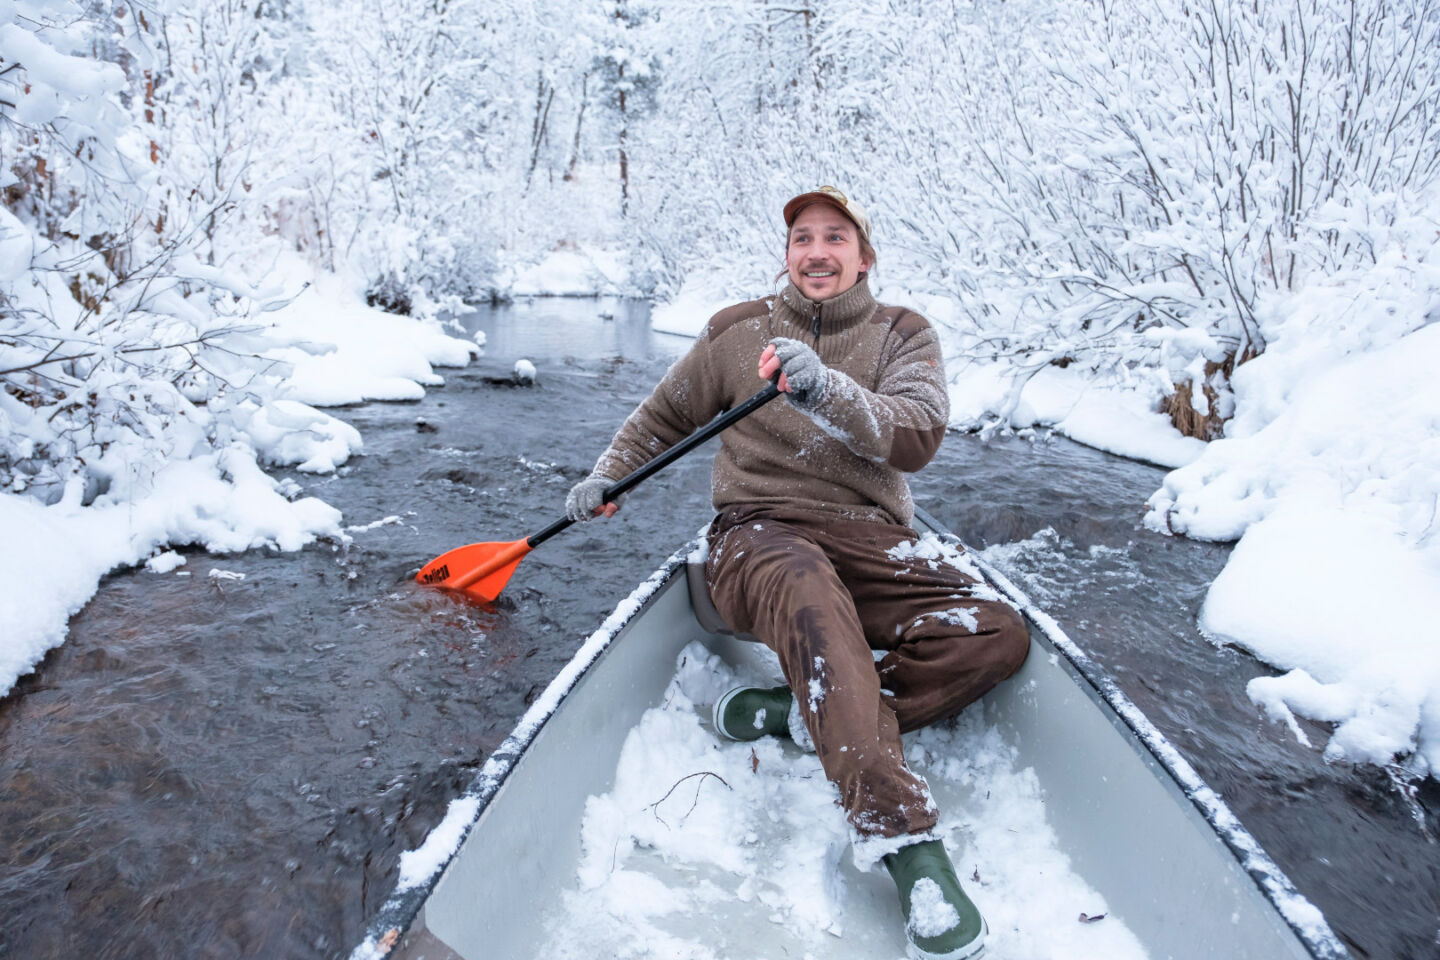 Winter paddling, a perk of seasonal work in Lapland